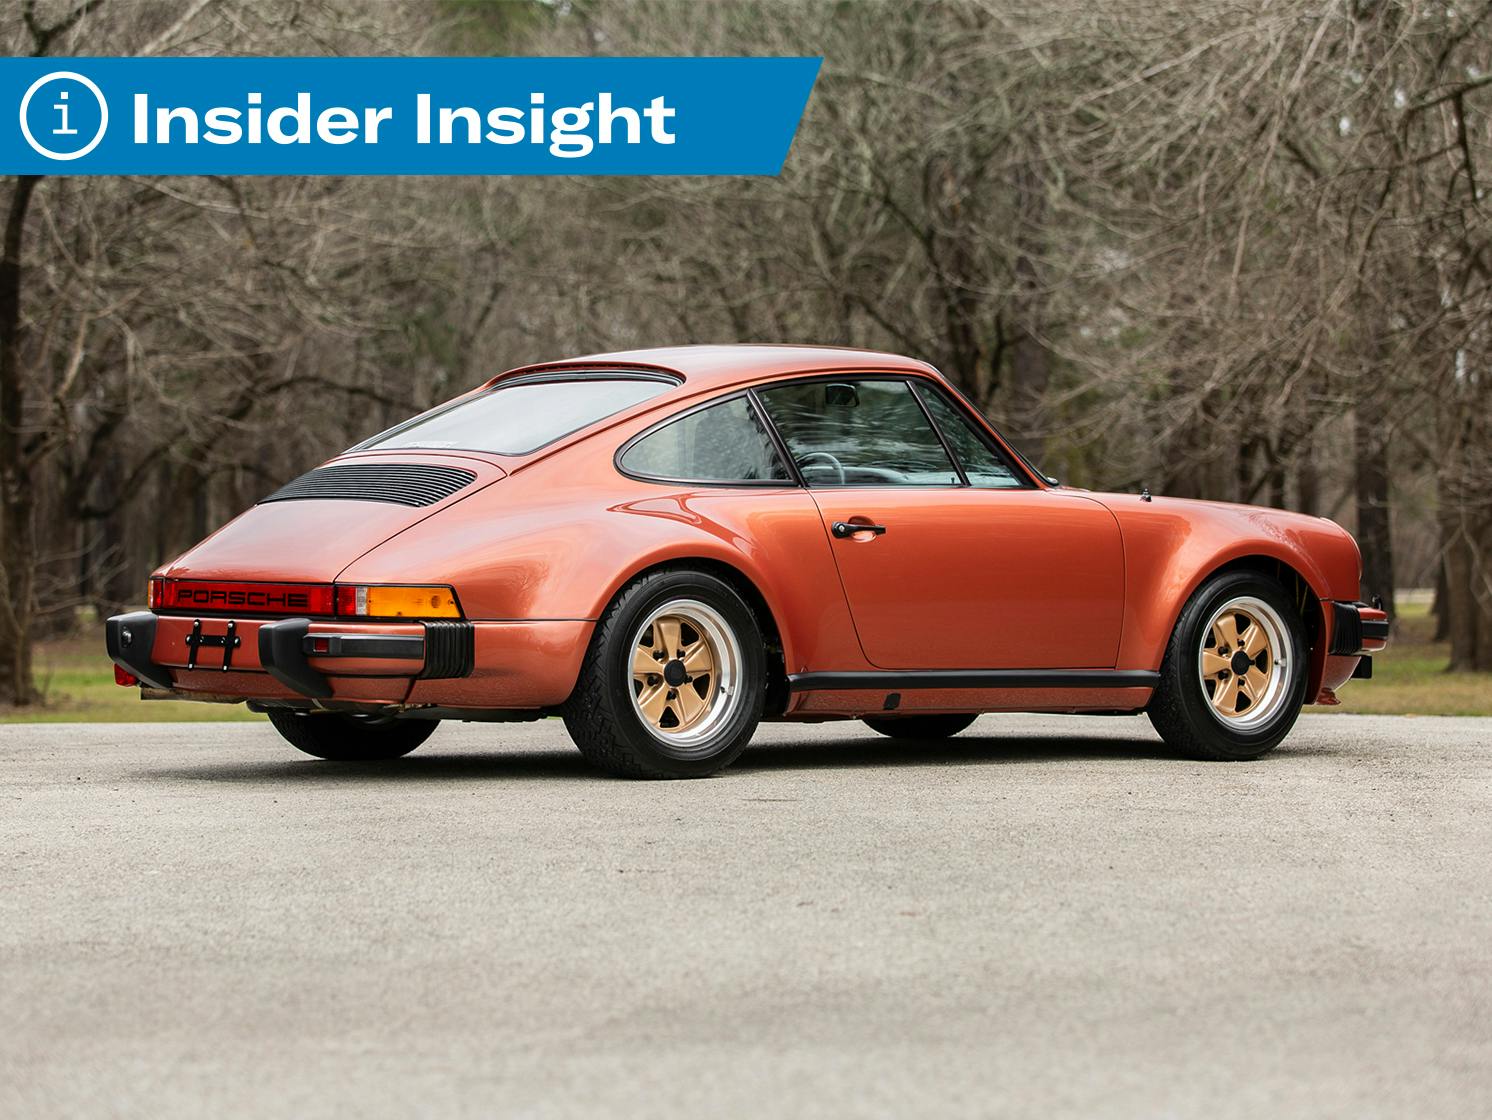 Insider Insight Porsche 930 Market Values